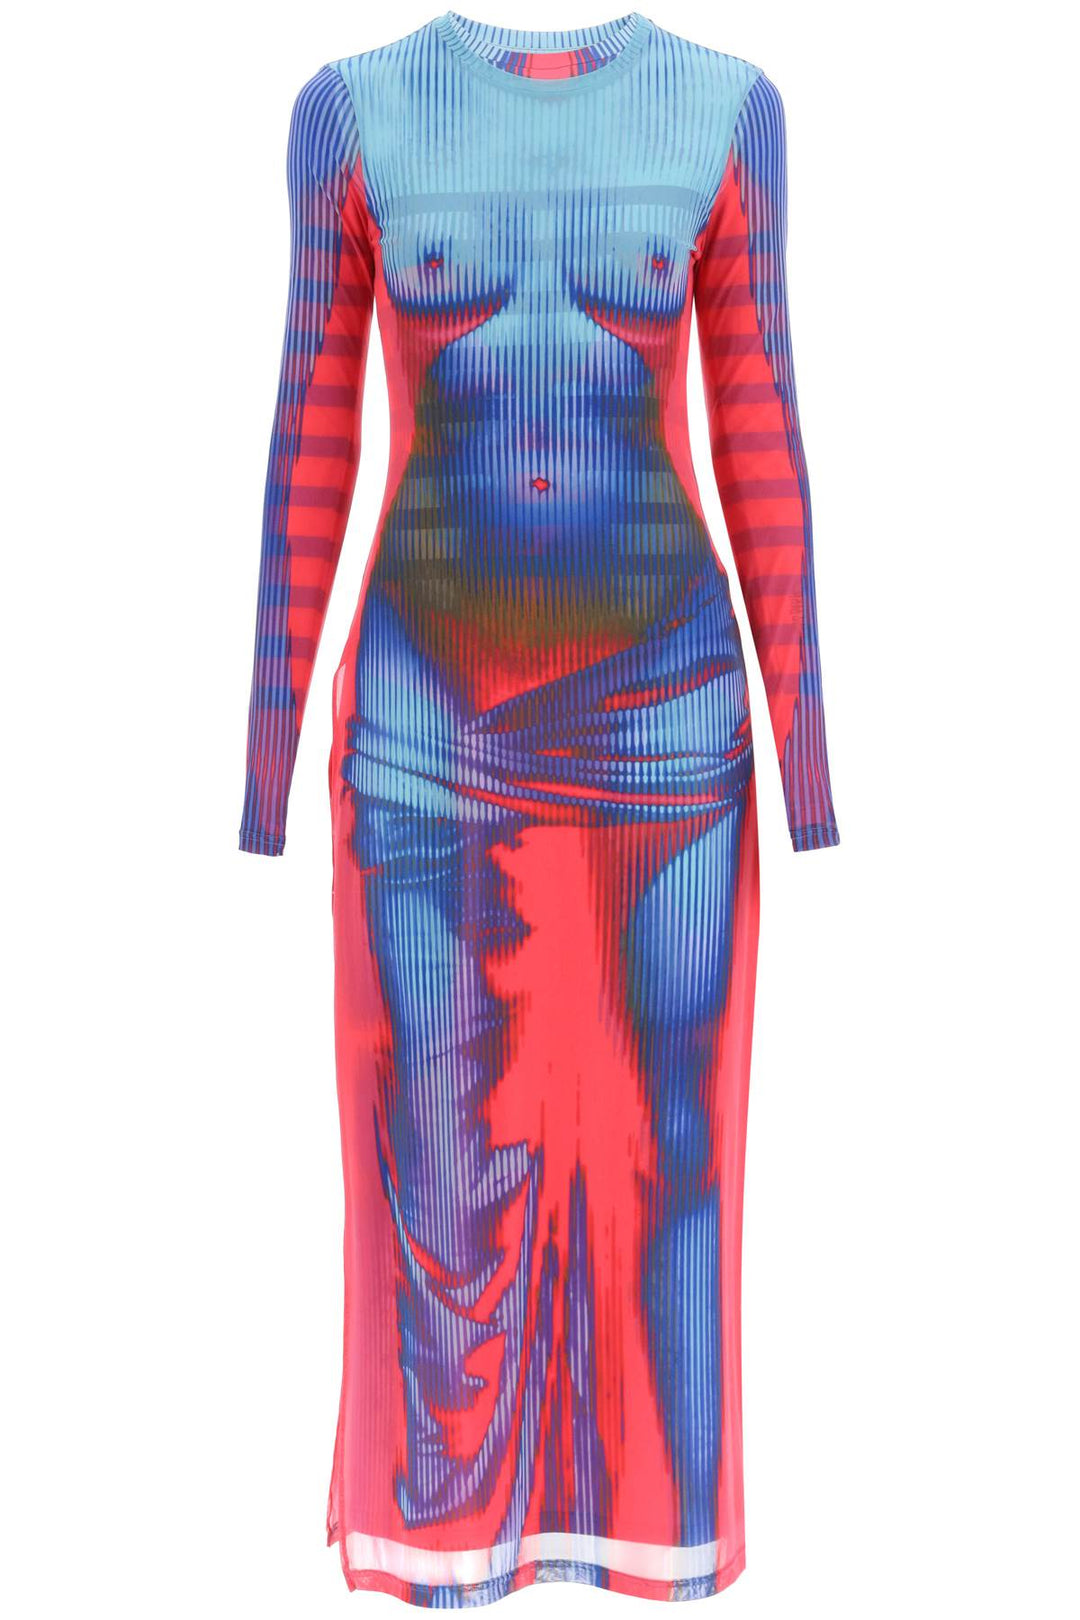 Y Project Jean Paul Gaultier Body Morph Dress   Blu